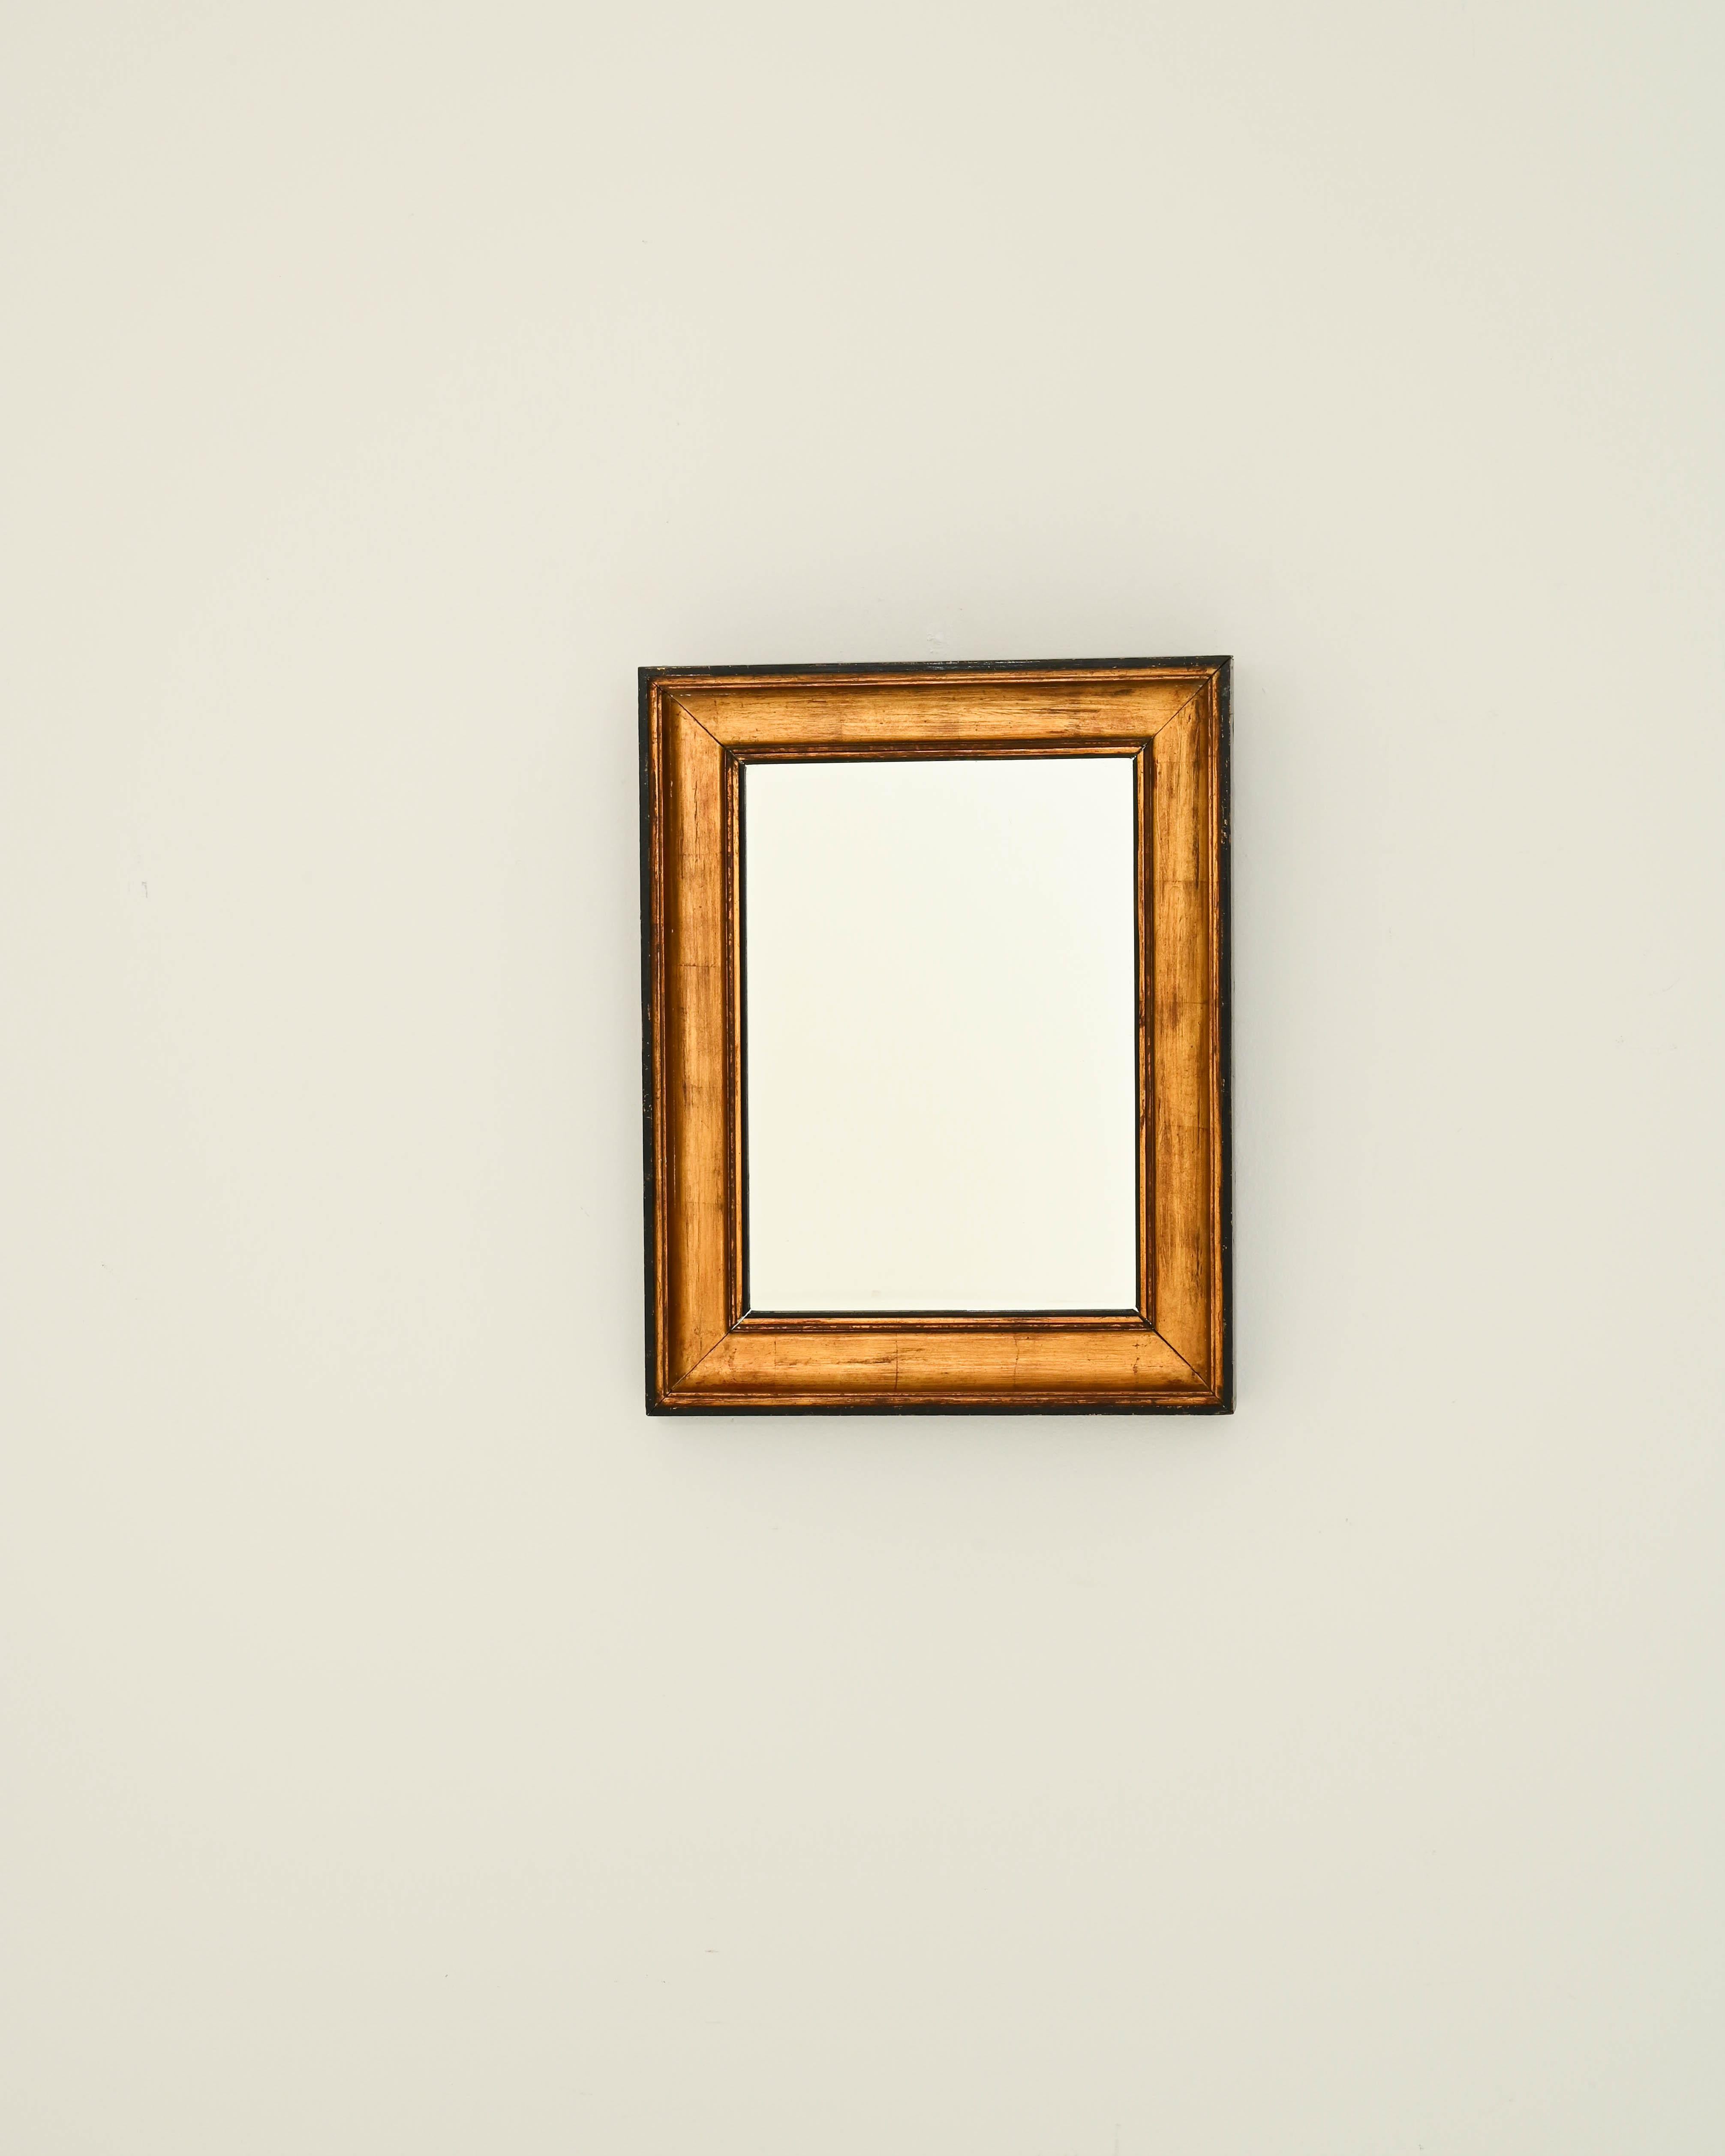 Conçu pour les pièces cossues, ce miroir du XIXe siècle attire l'attention par son élégance. Le cadre rectangulaire en bois, fabriqué à la main, est d'une grande simplicité, définie par des détails subtils. Le cadre doré richement texturé est